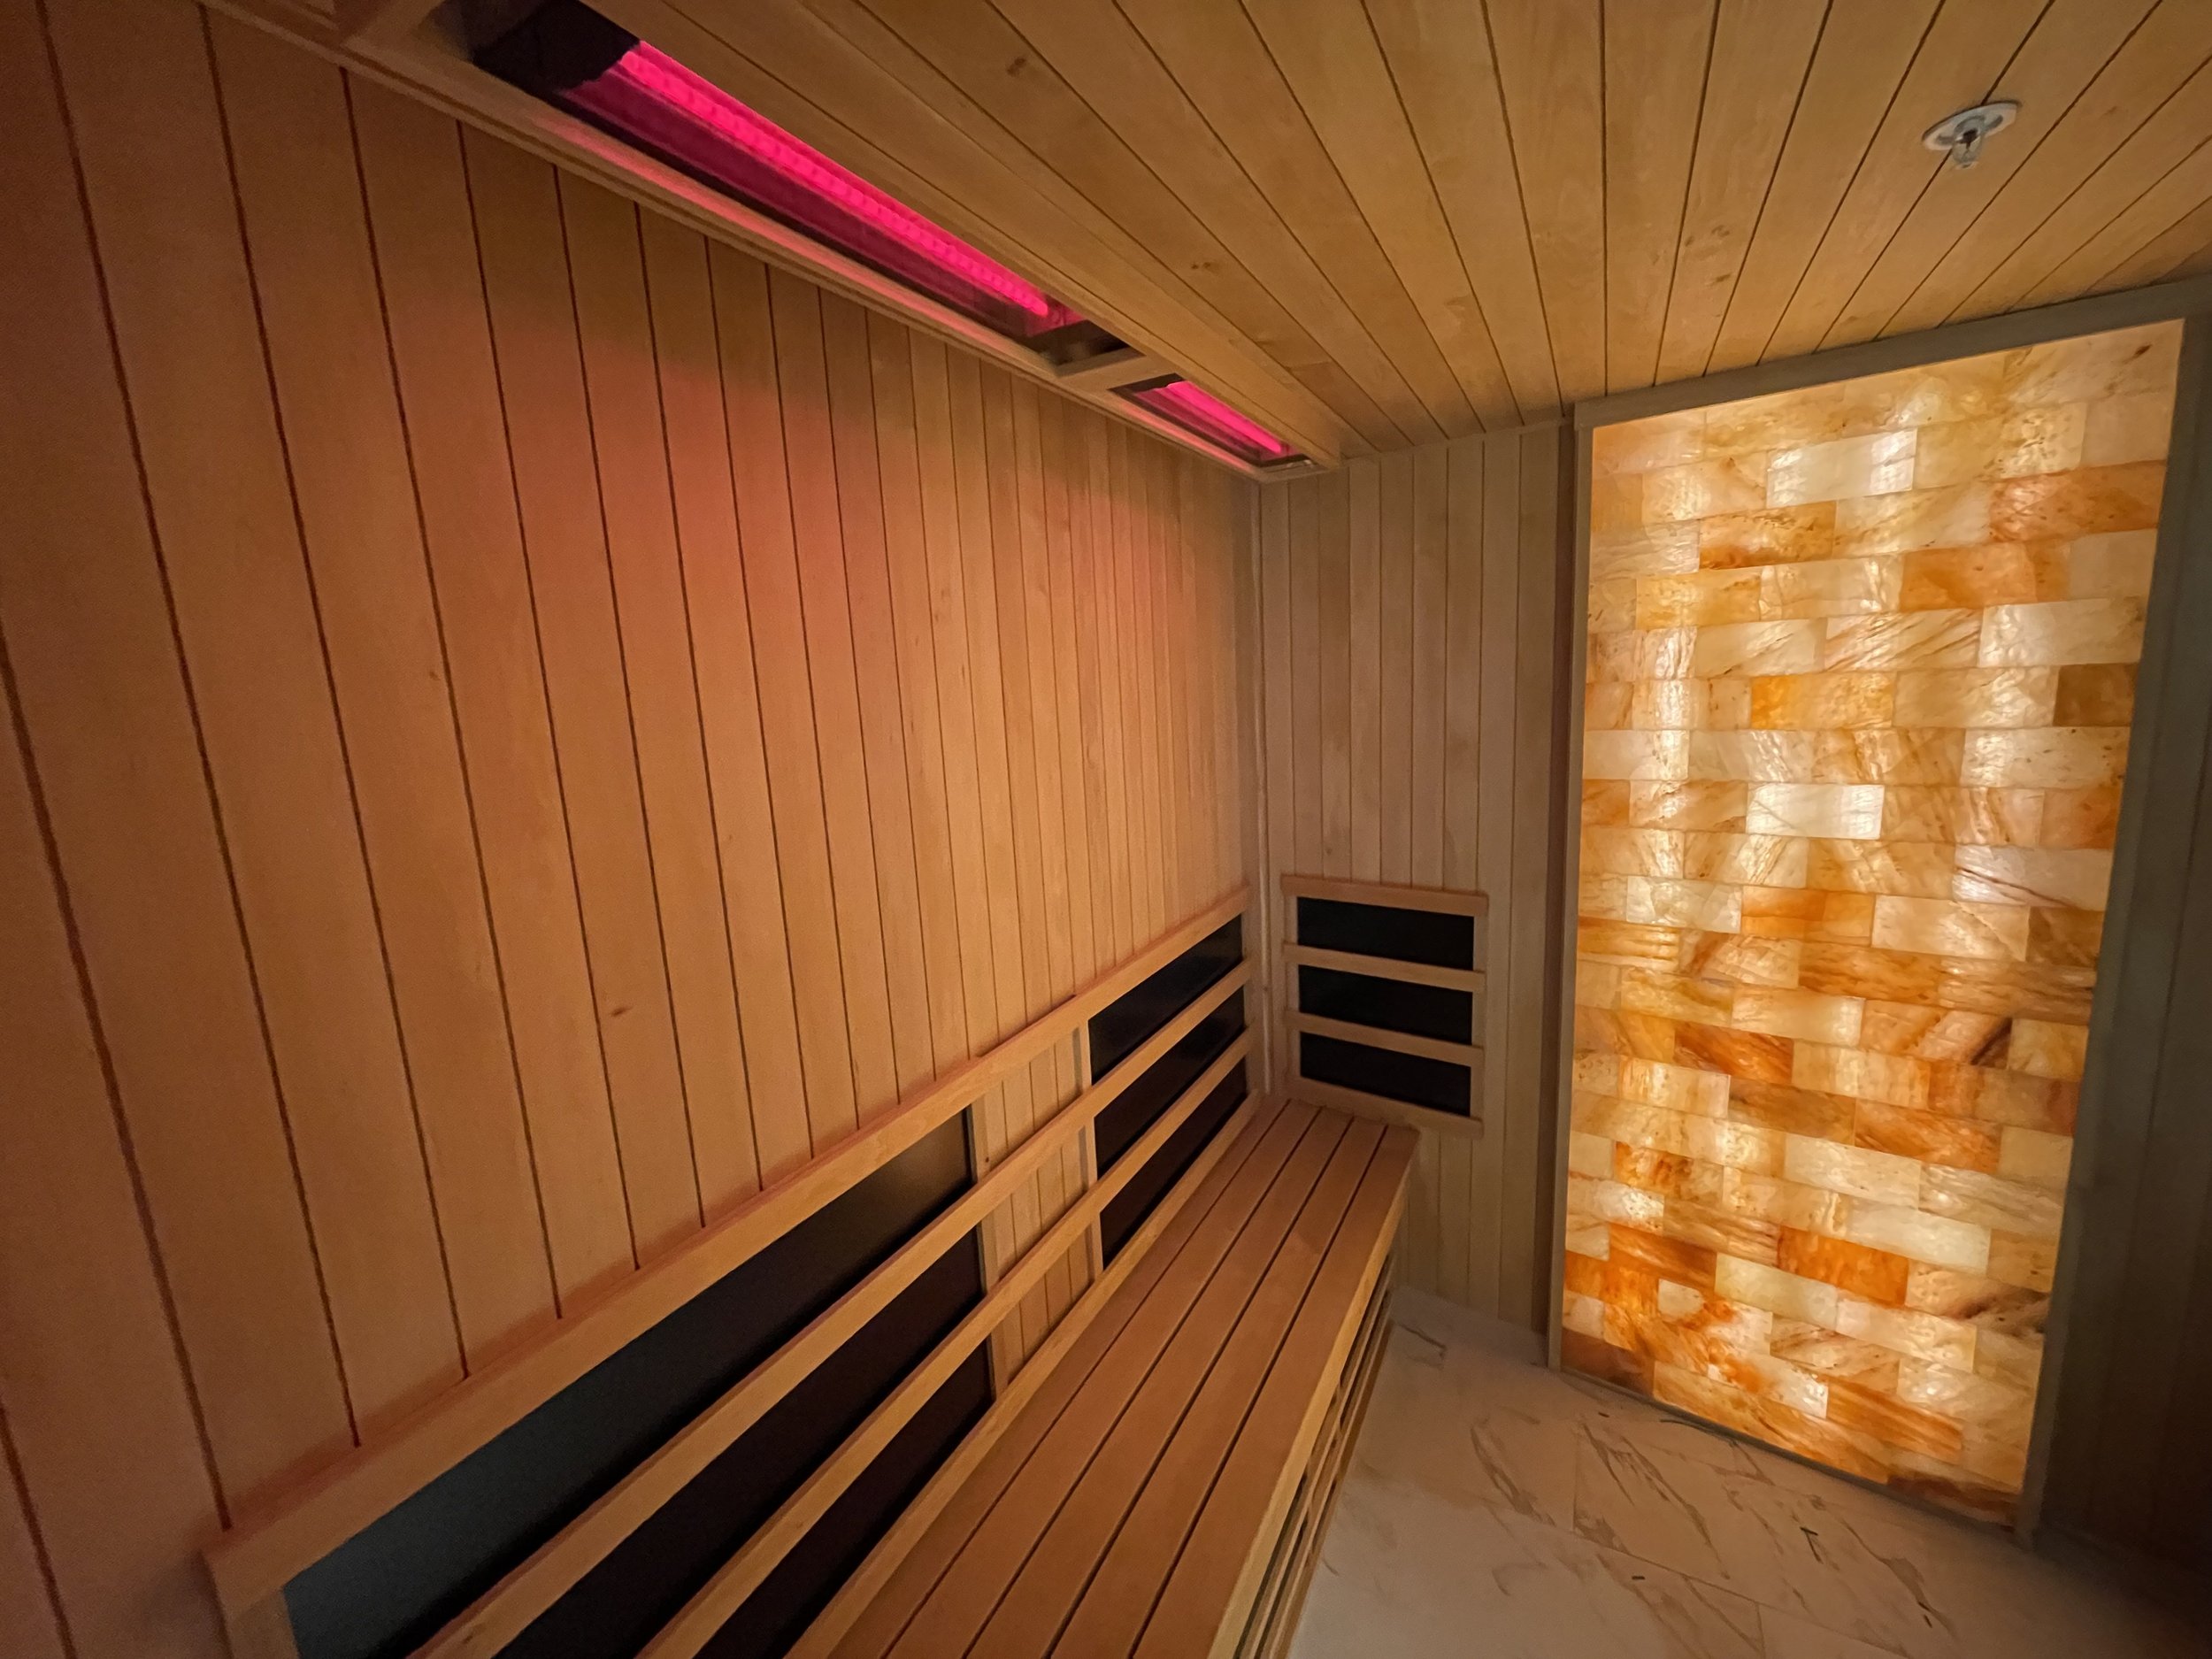 infrared saunas